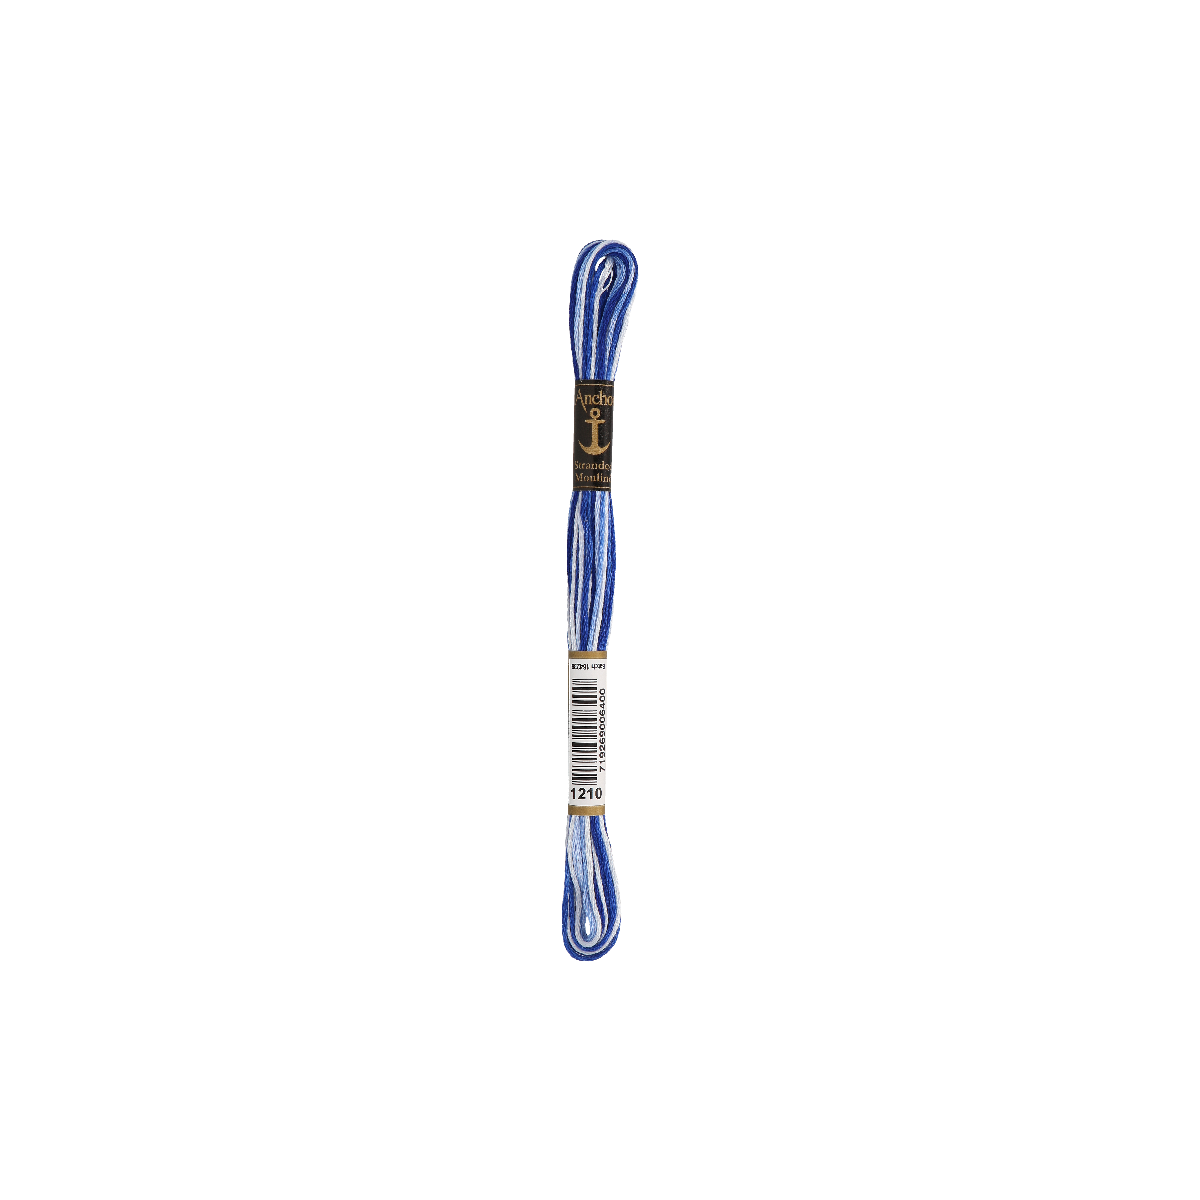 Anchor Sticktwist 8m, blau ombre, Baumwolle, Farbe 1210,...